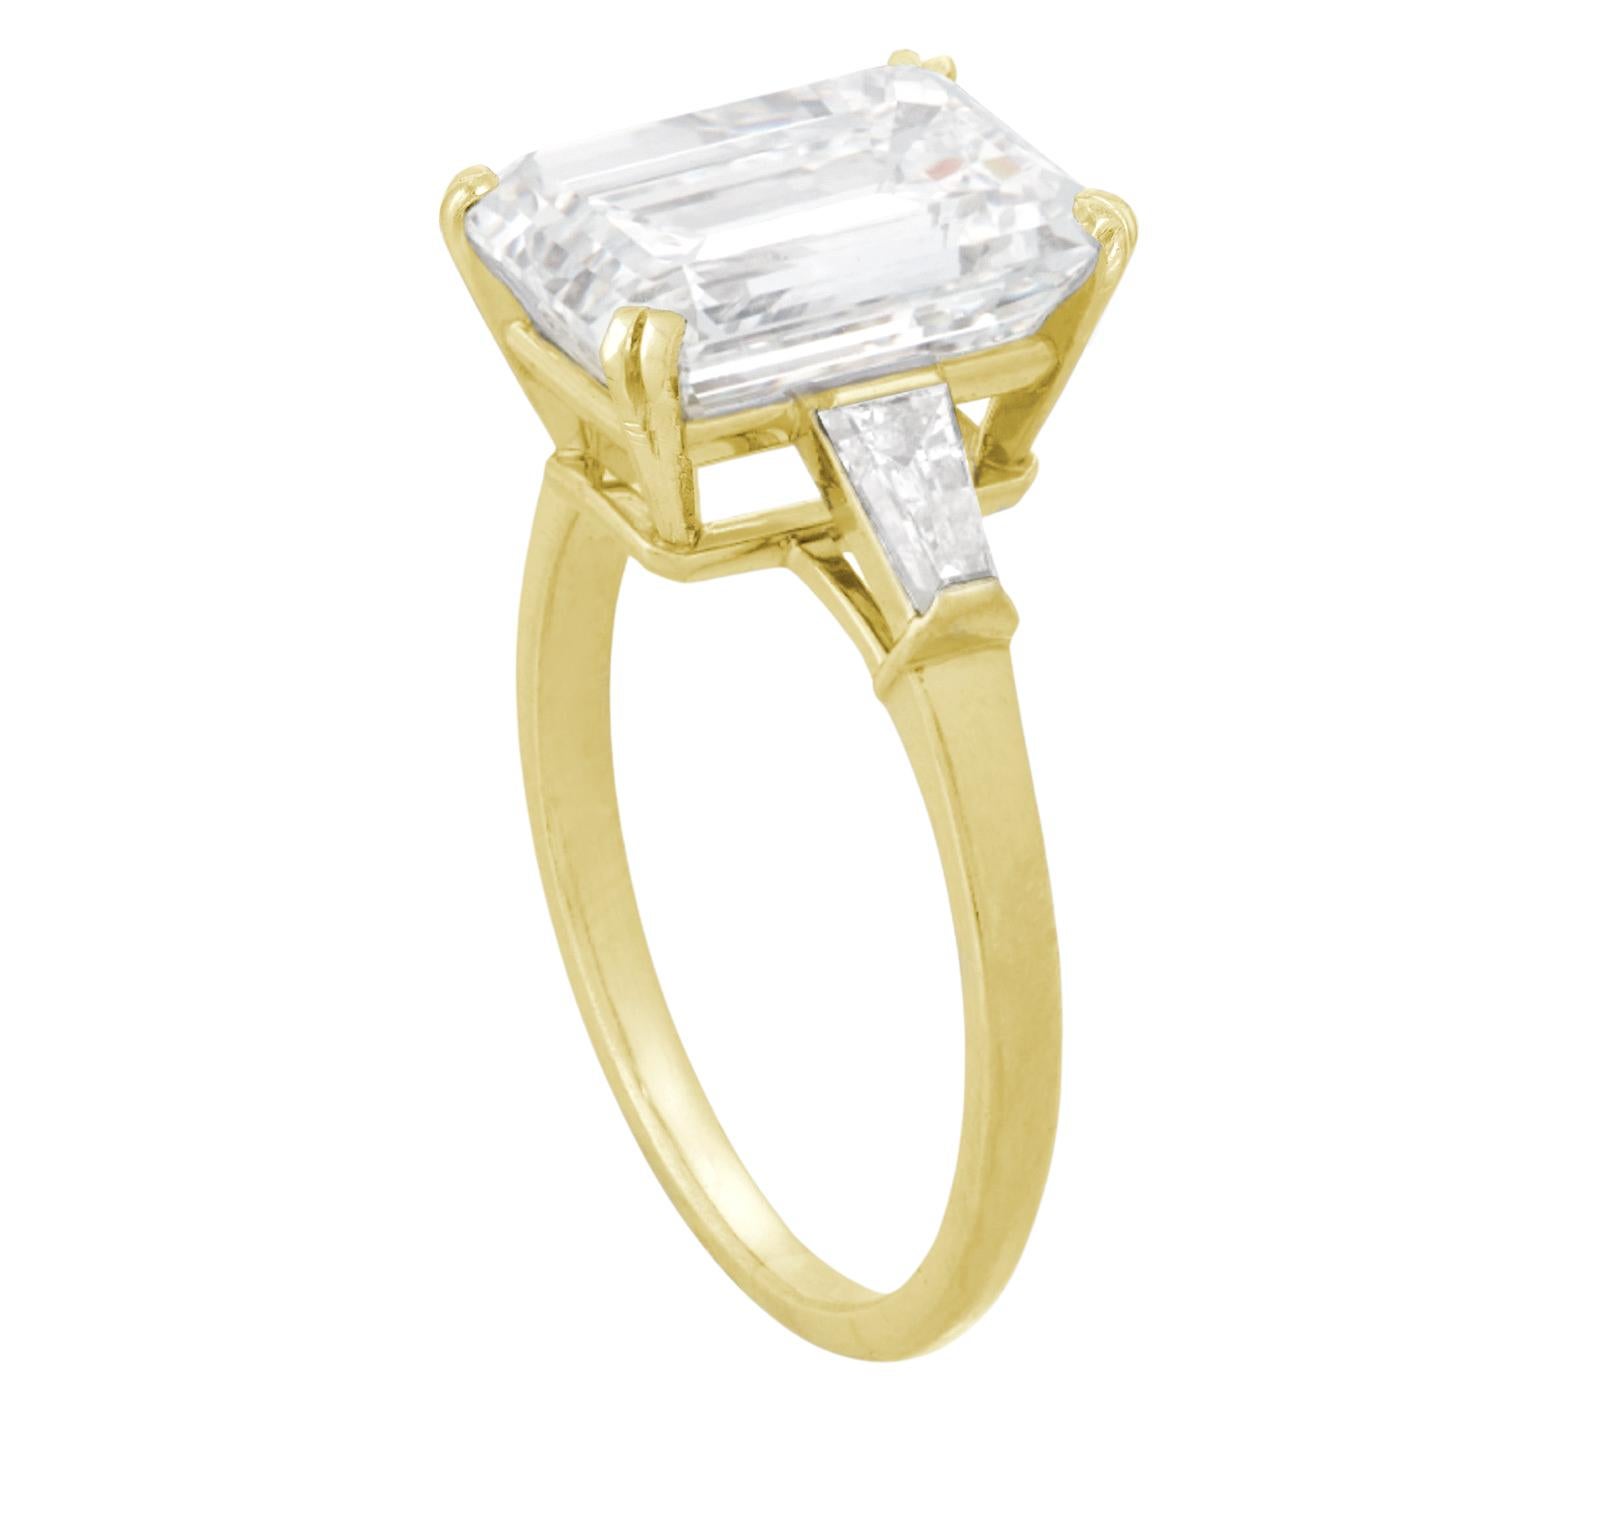 Une exquise bague en diamant taille émeraude de 3 carats, certifiée par le GIA.
Or jaune 18 carats

